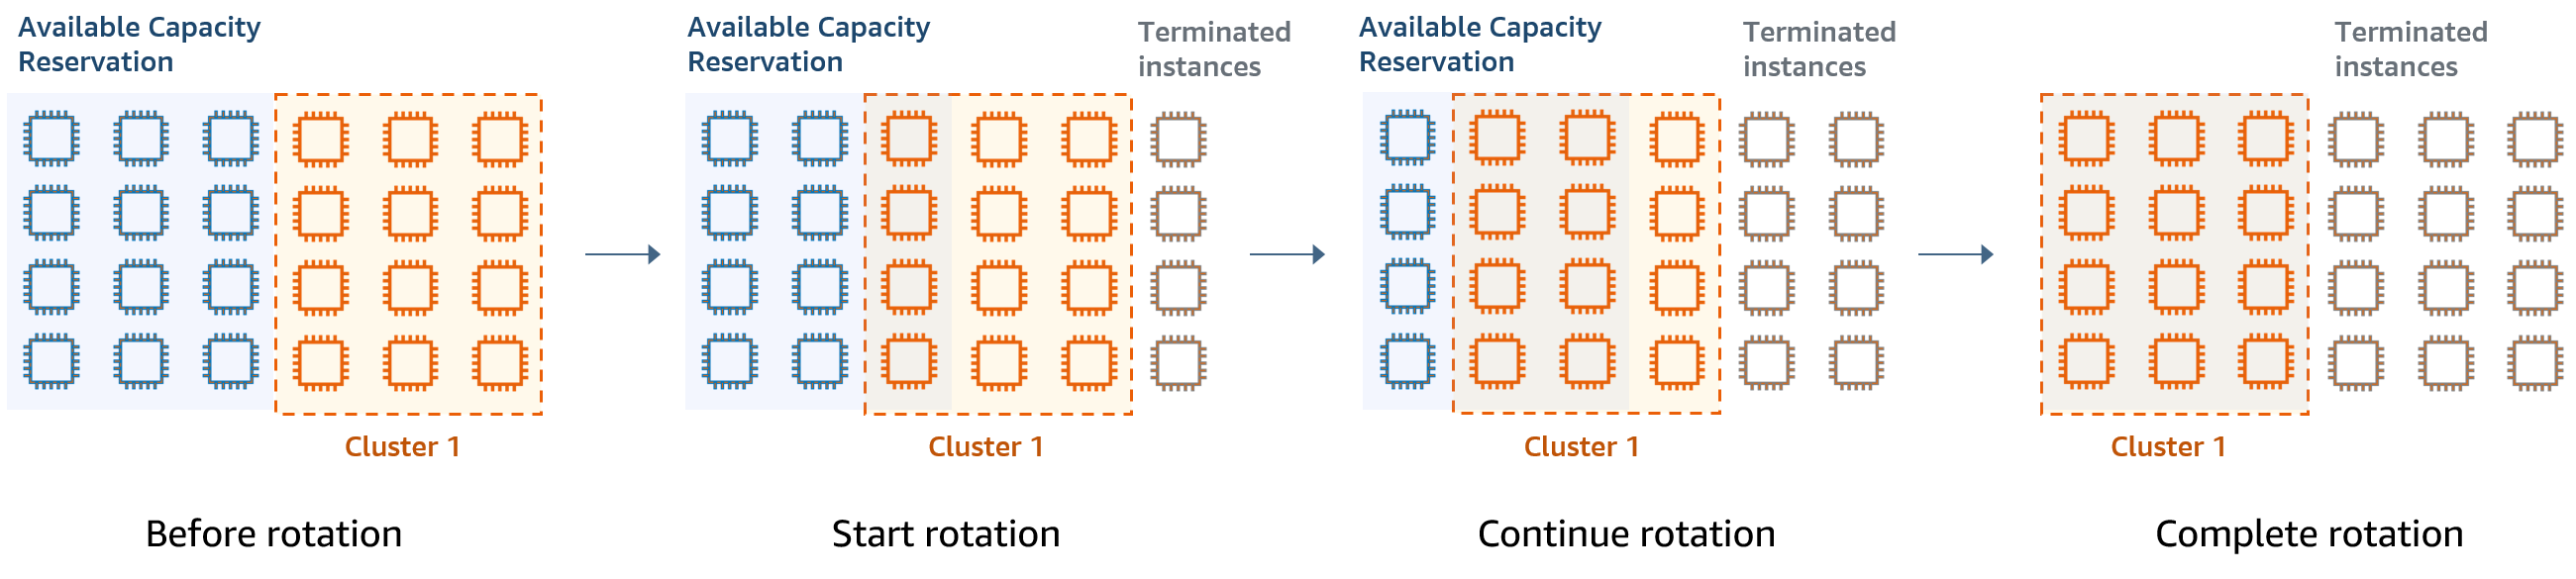 Rotation des clusters en fonction des réservations de capacité disponibles